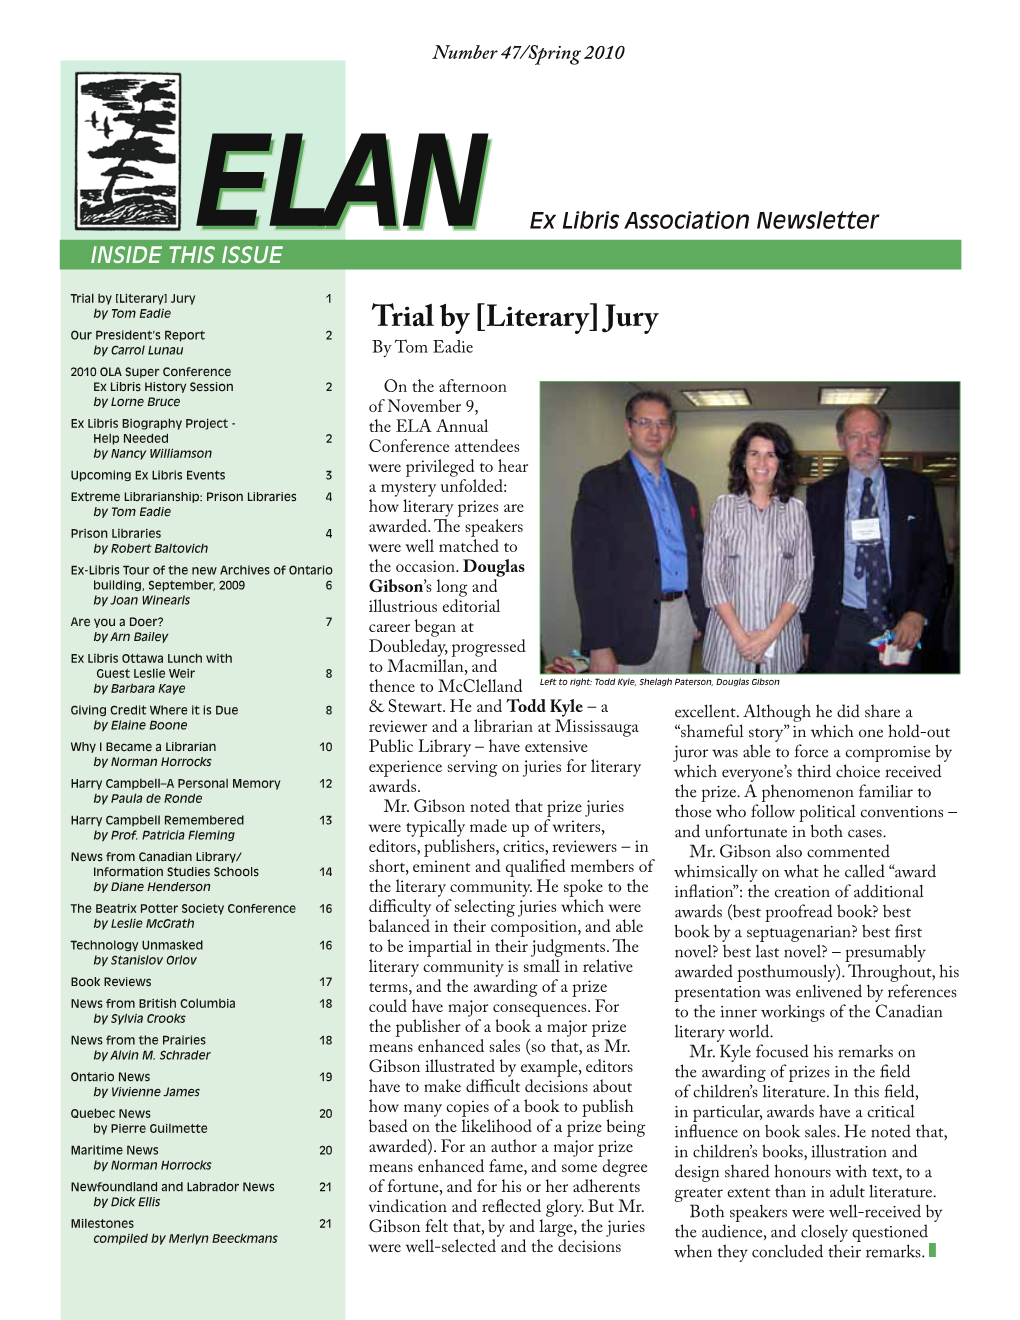 ELANELAN Ex Libris Association Newsletter INSIDE THIS ISSUE